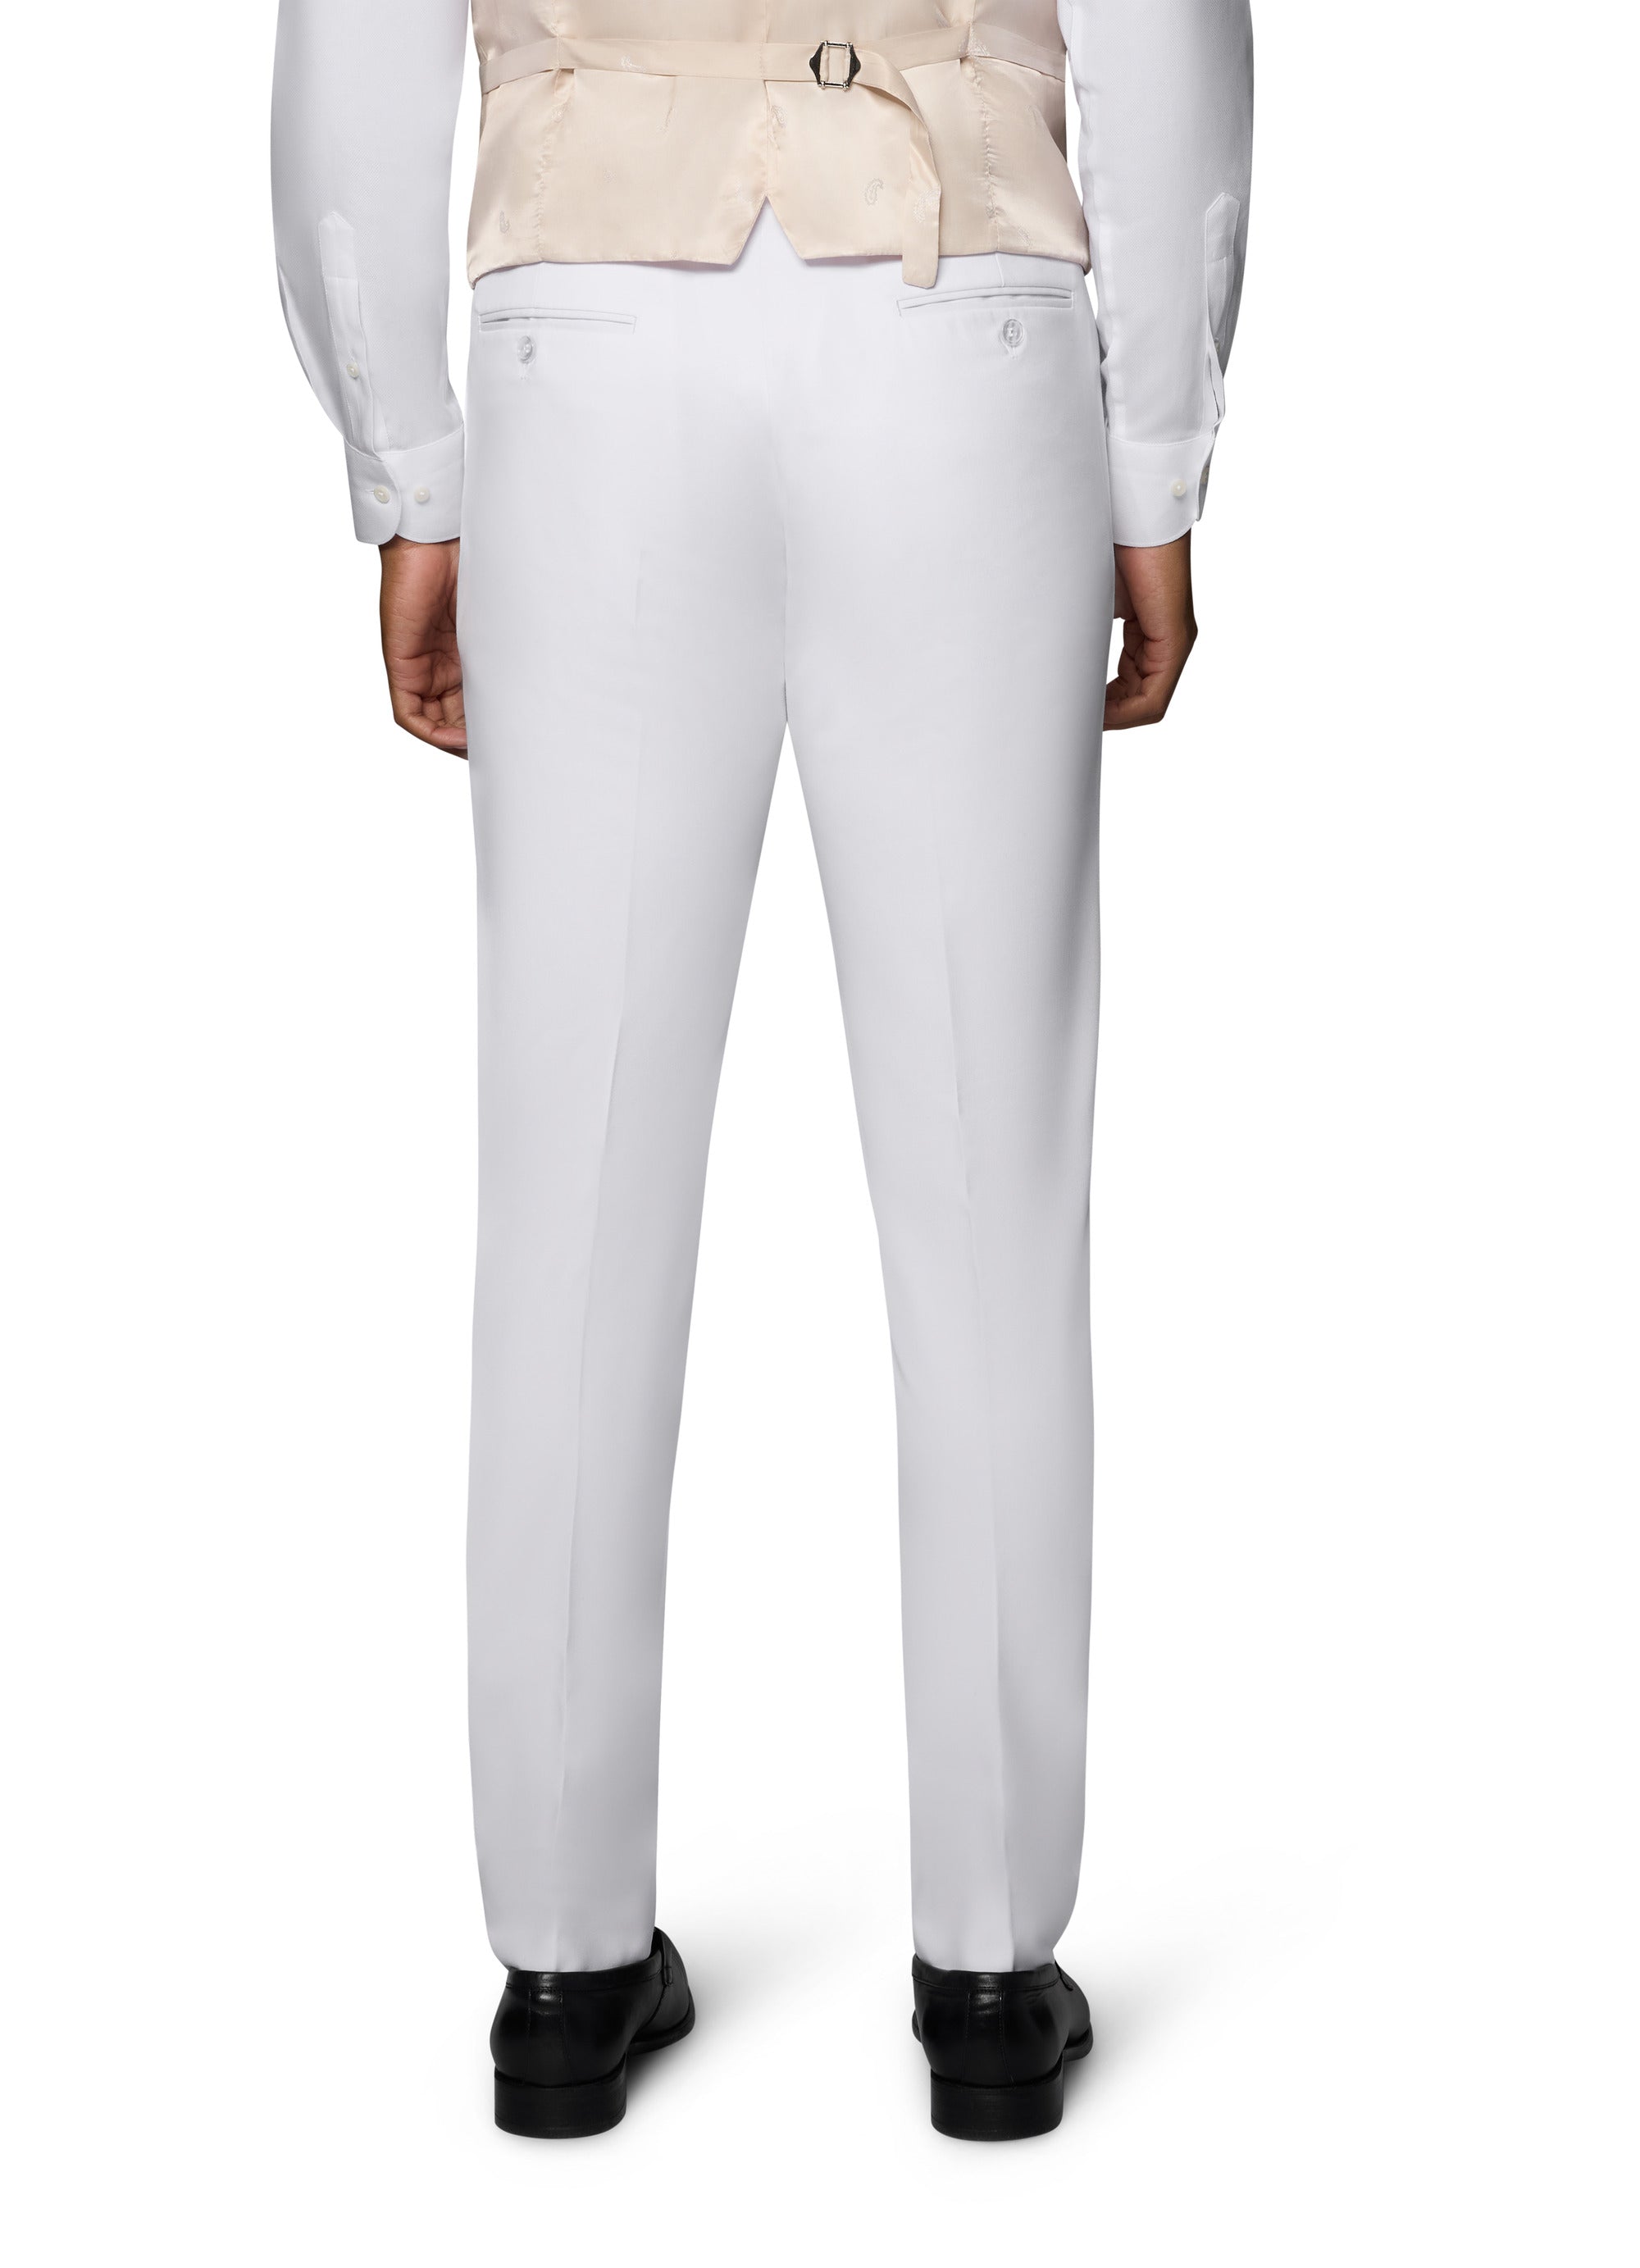 Berragamo Vested Solid White Slim Fit